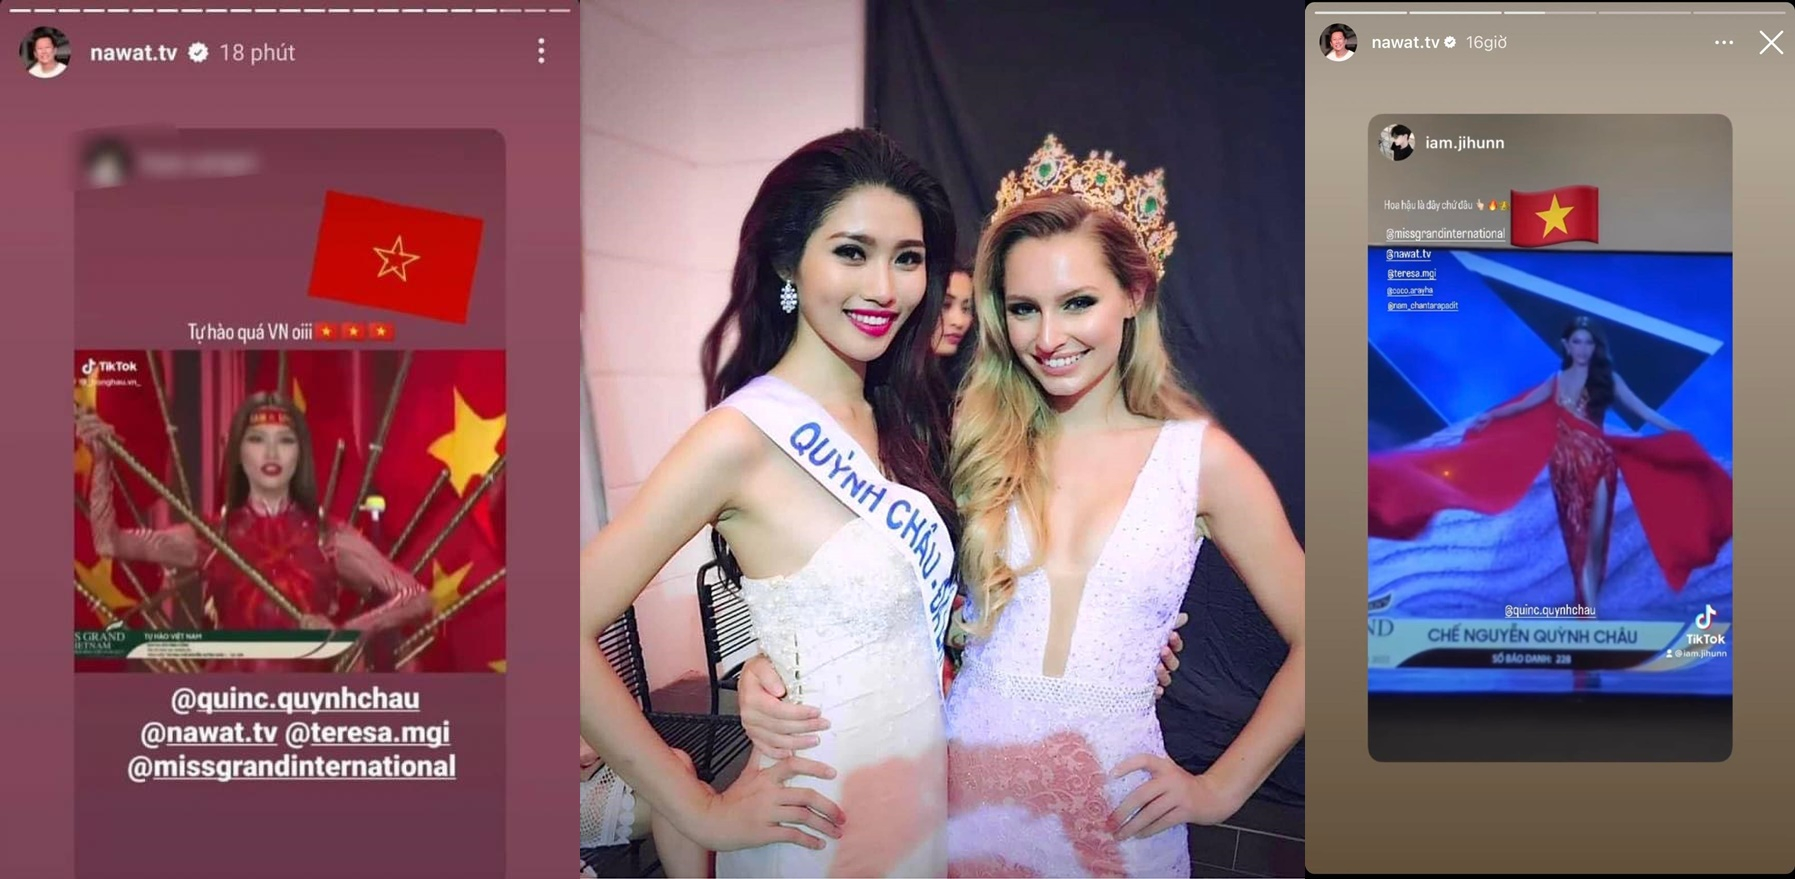 Liên tục xuất hiện trên story chủ tịch Miss Grand International - Mr. Nawat: "Tín hiệu vũ trụ" gọi tên Chế Nguyễn Quỳnh Châu?